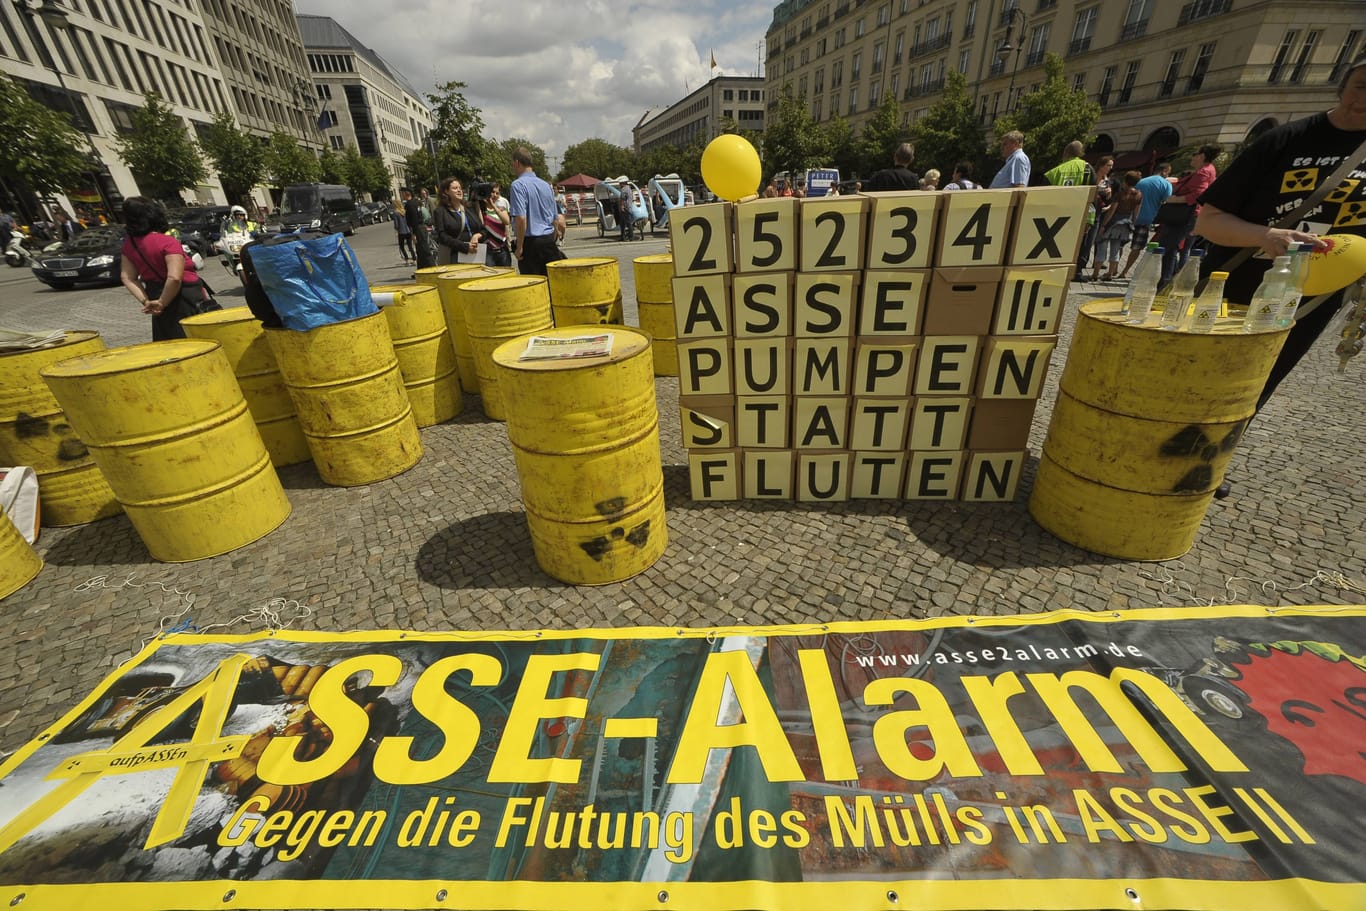 Protest gegen das Endlager Asse im Jahr 2012 (!) in Berlin: Damals war Pumpen statt Fluten noch eine Option. Heute offenbar nicht mehr.